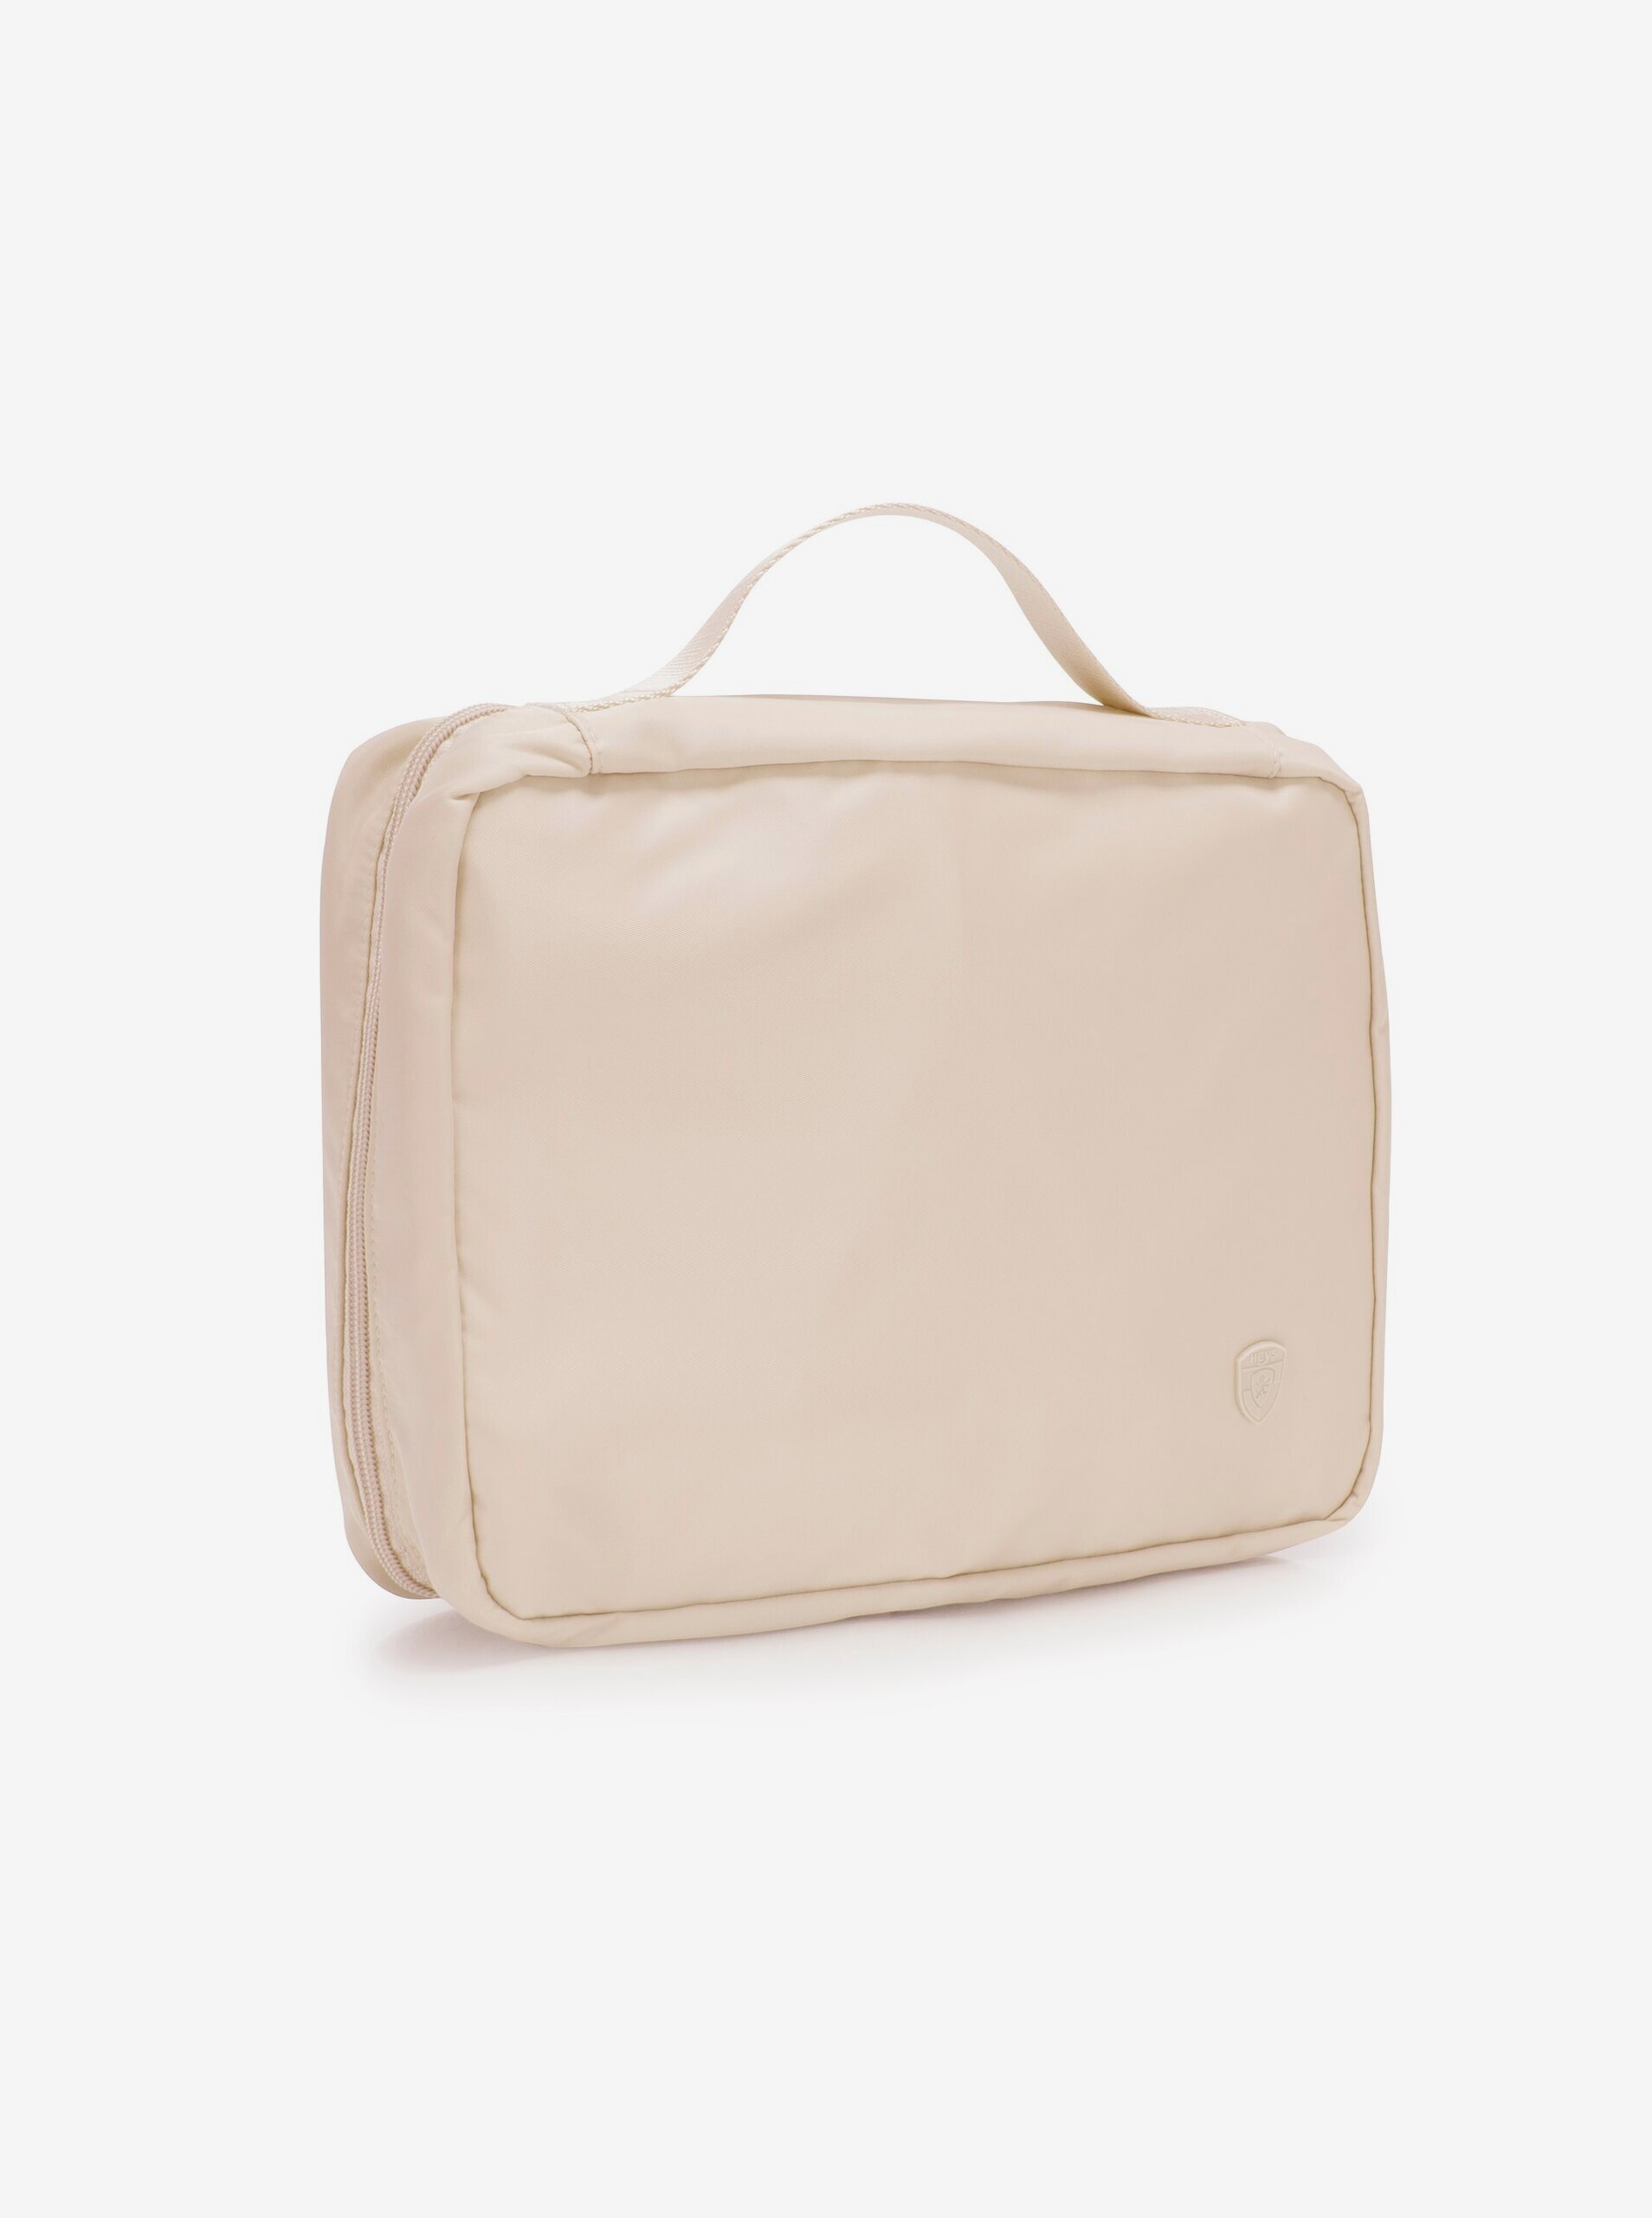 Lacno Béžová kozmetická taška Heys Basic Toiletry Bag Tan